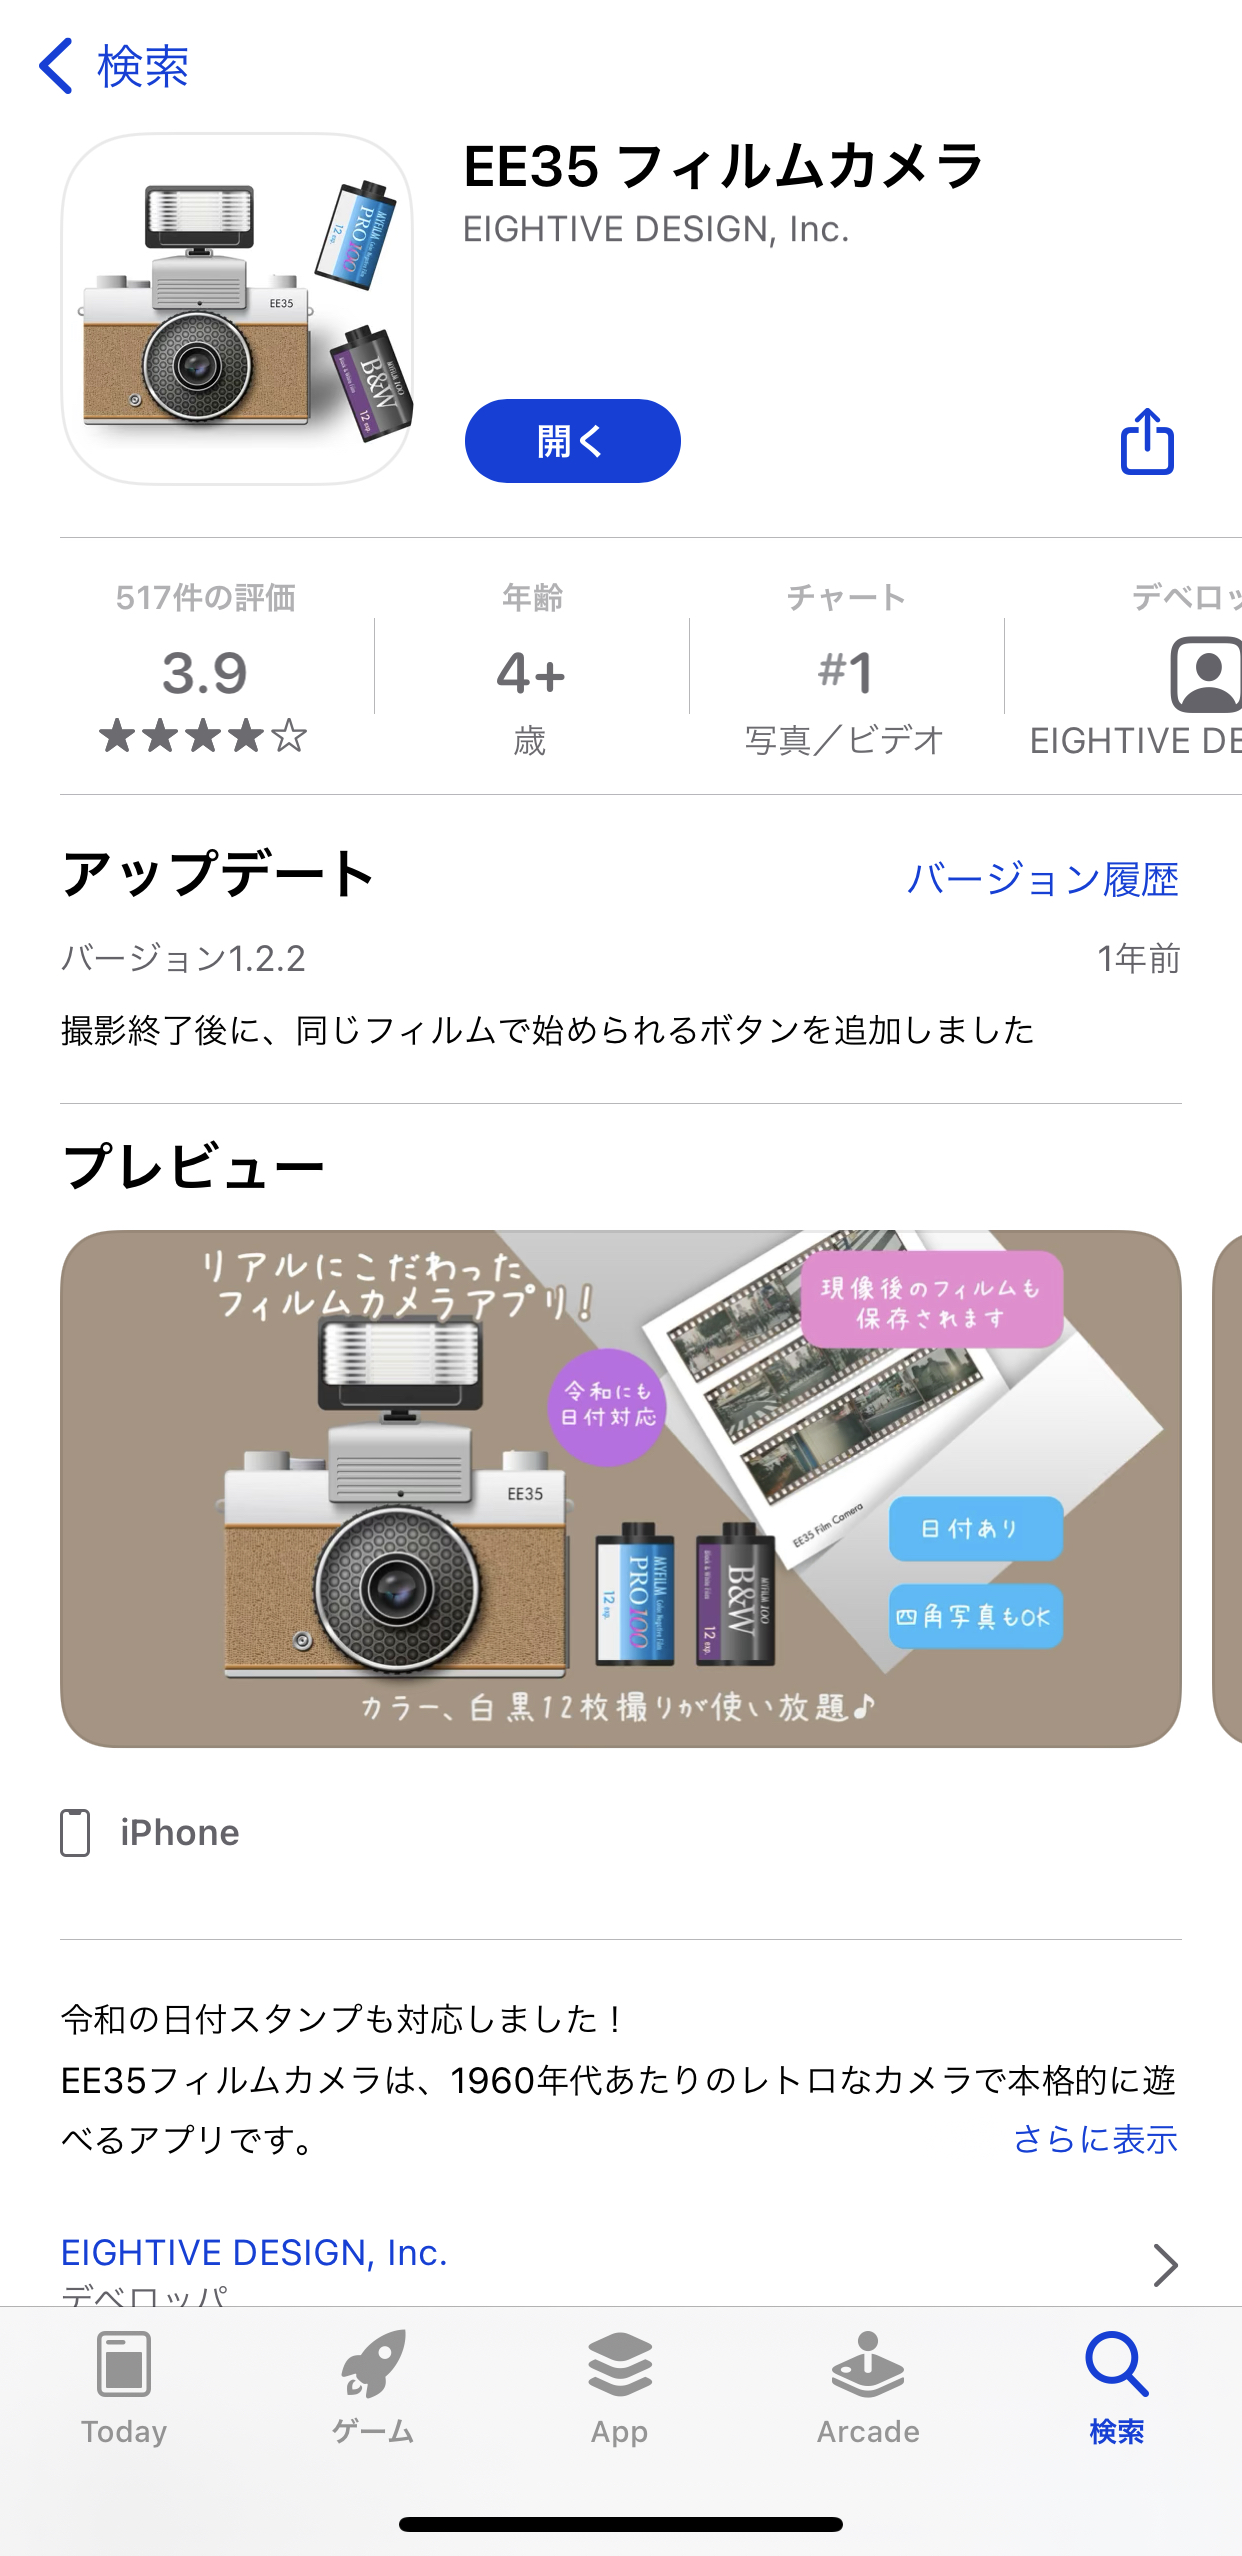 おしゃピク♪ サチコのオススメフィルムカメラアプリ